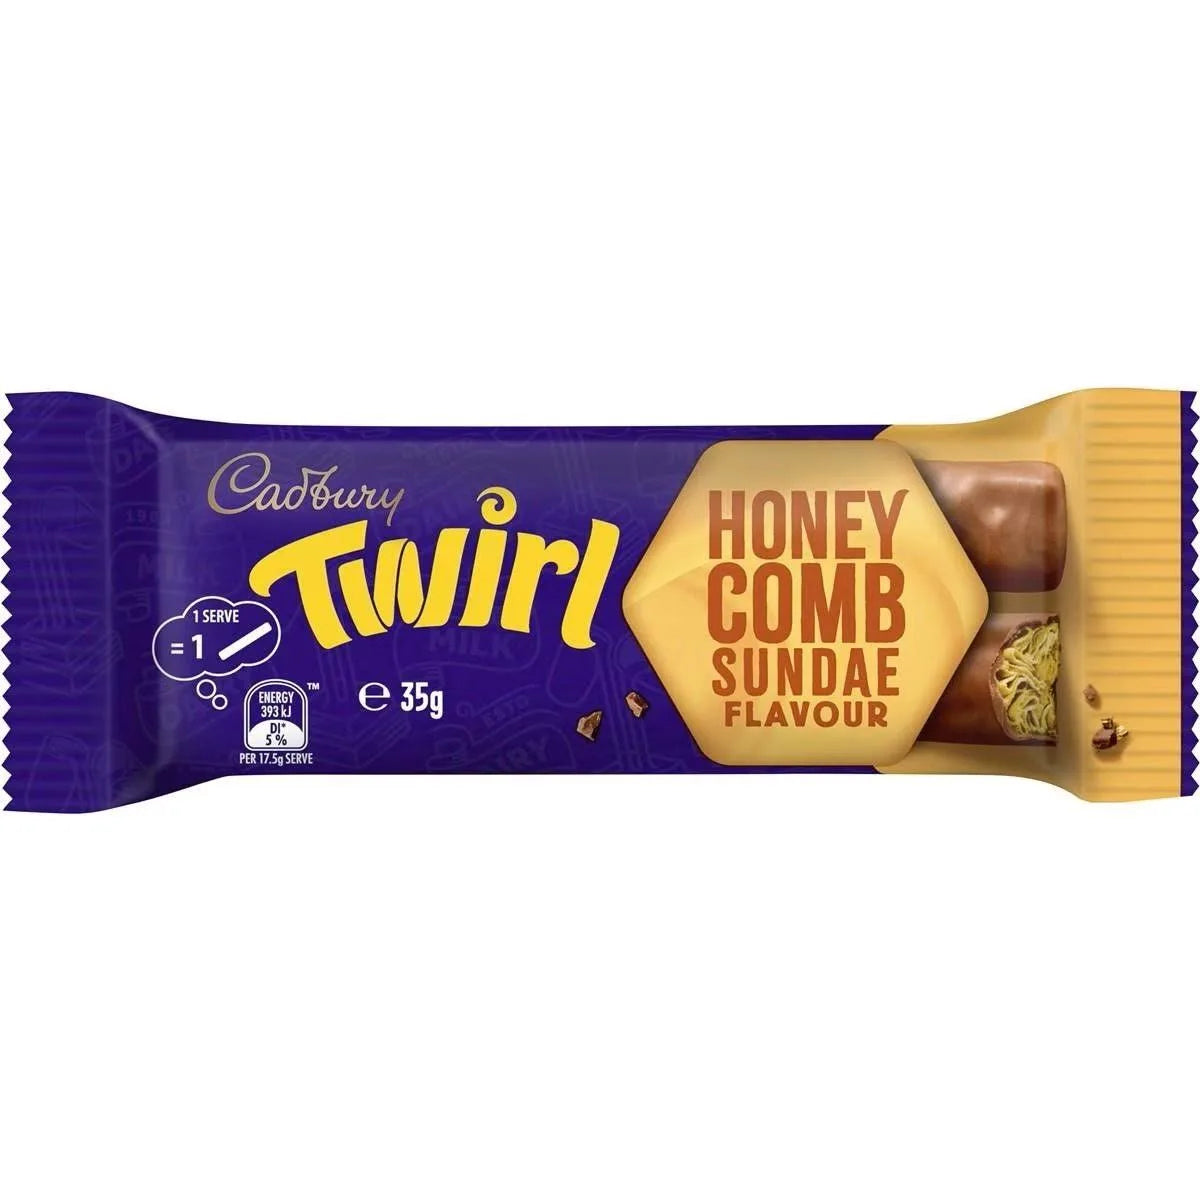 Cadbury's Twirl Honeycomb Sundae 35g (Australia)